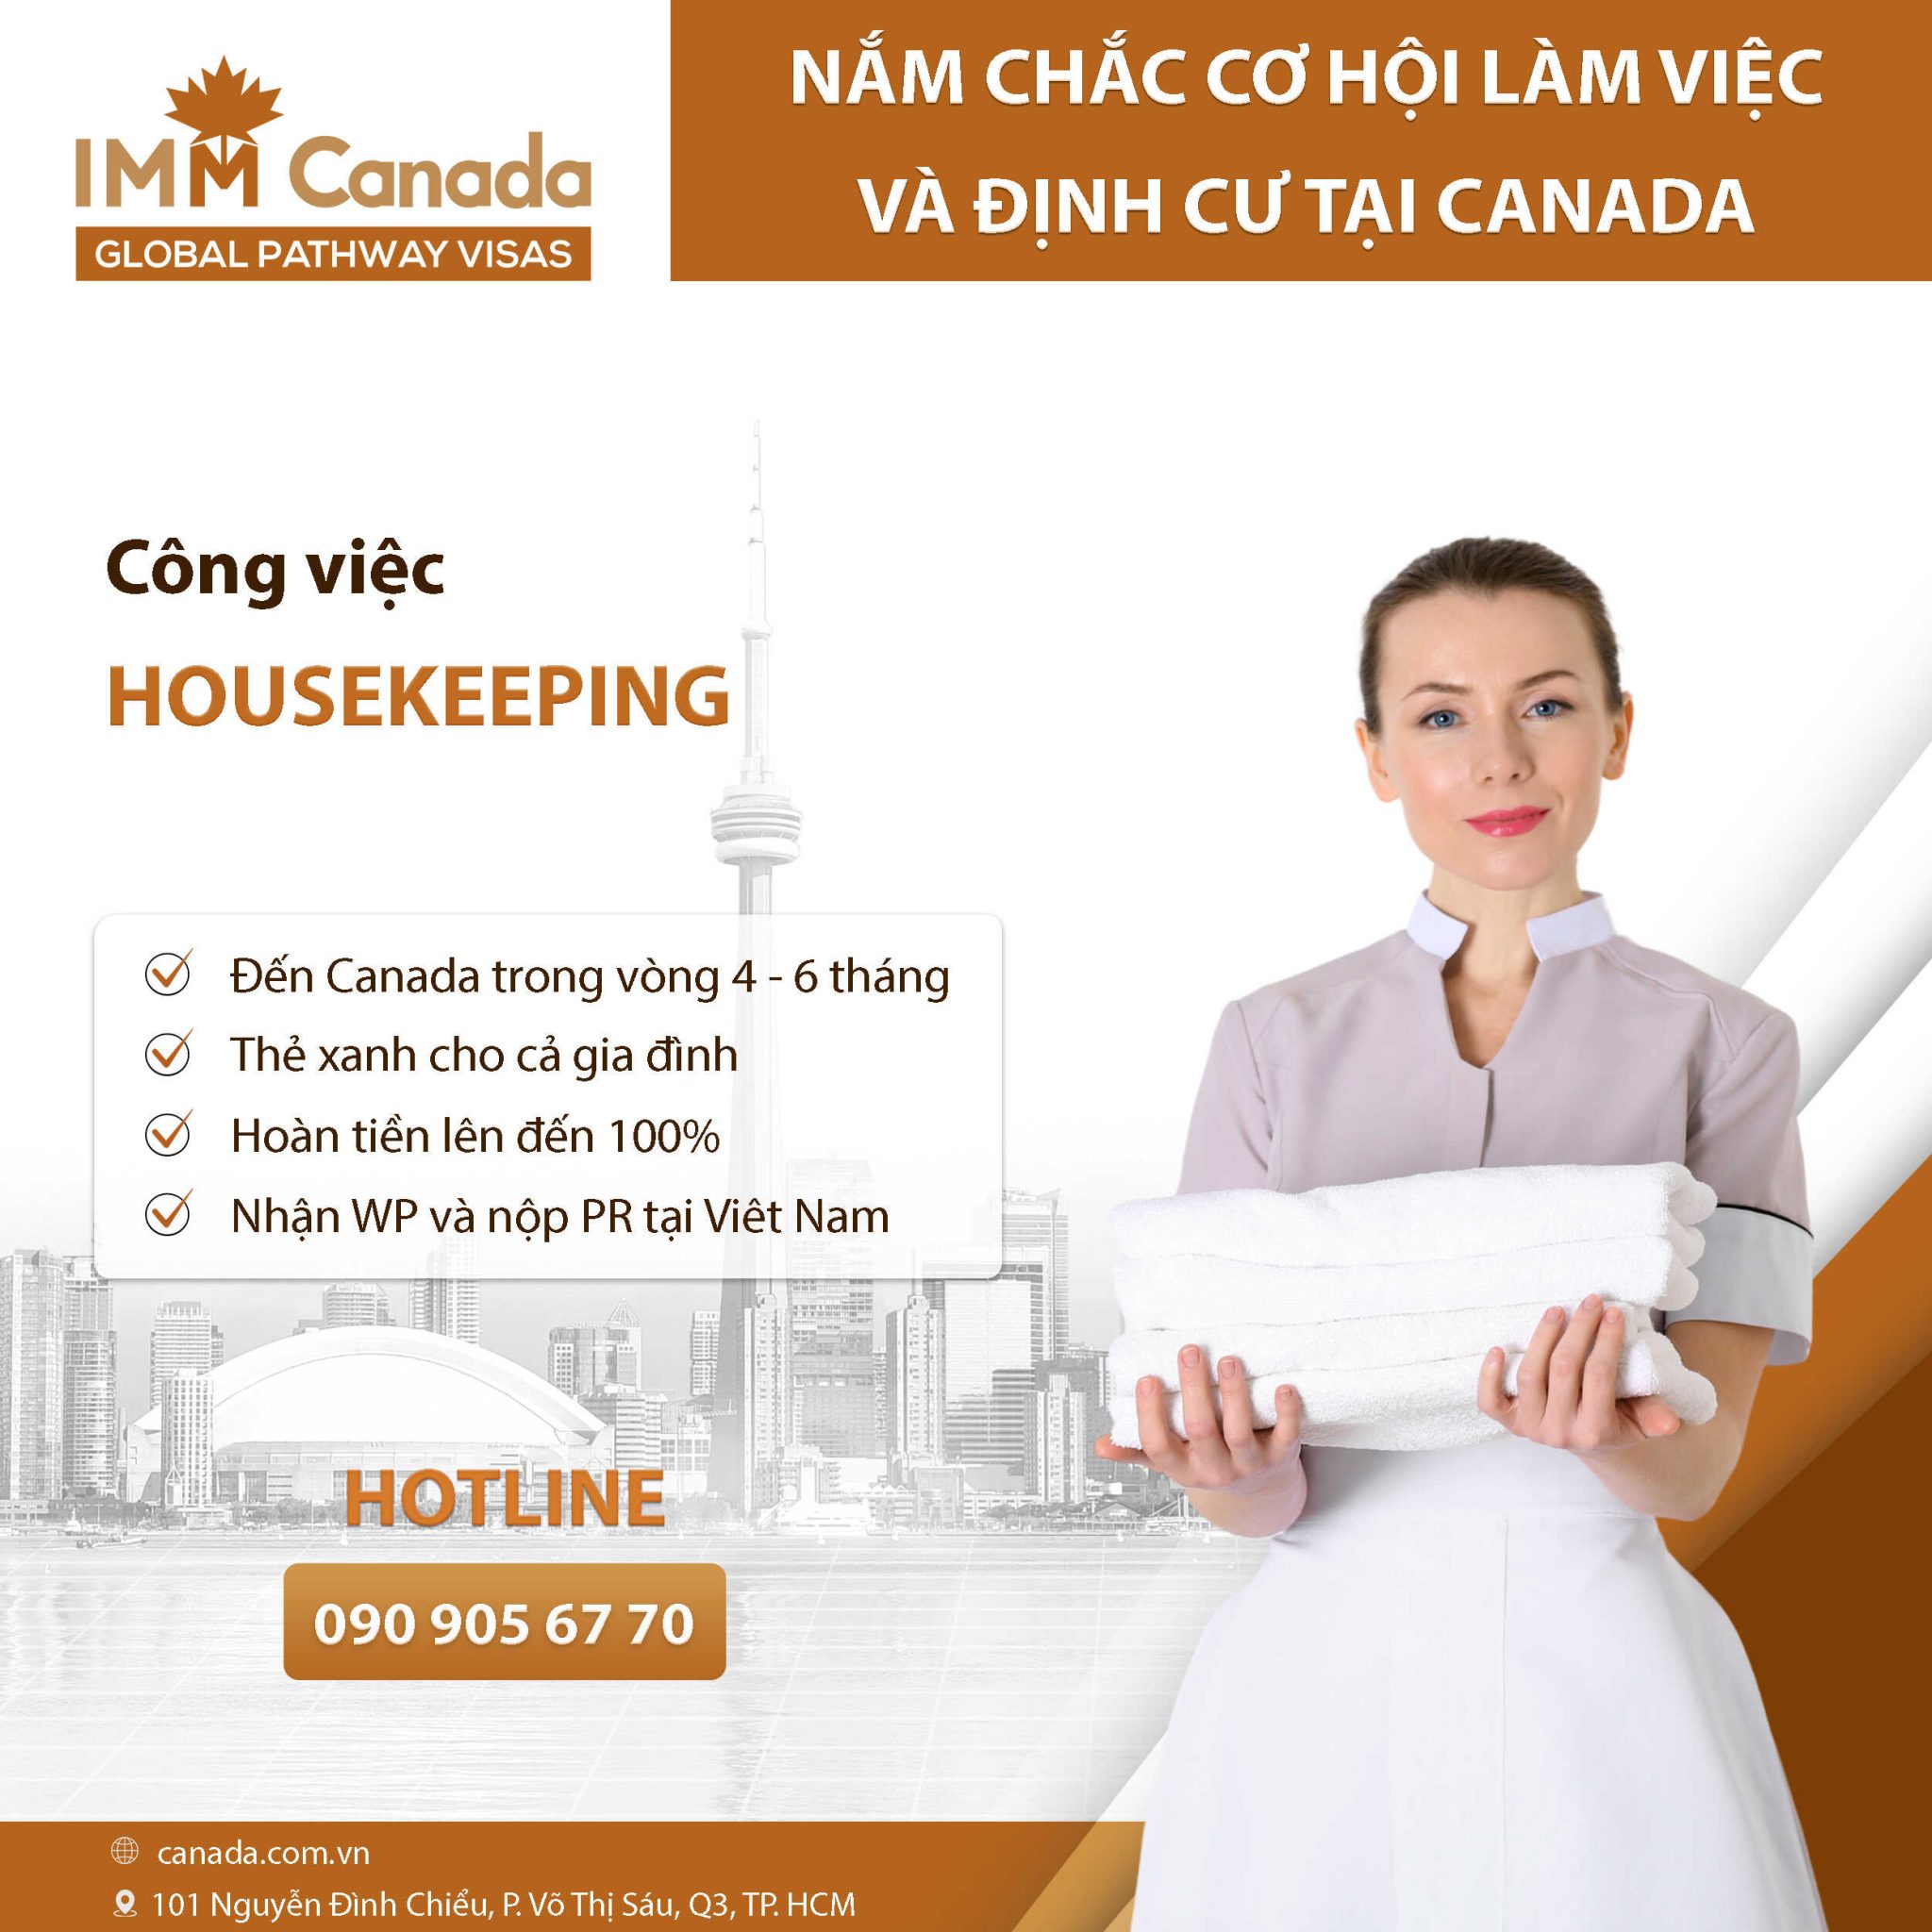 Định cư Canada diện tay nghề lĩnh vực F&B - Housekeeping